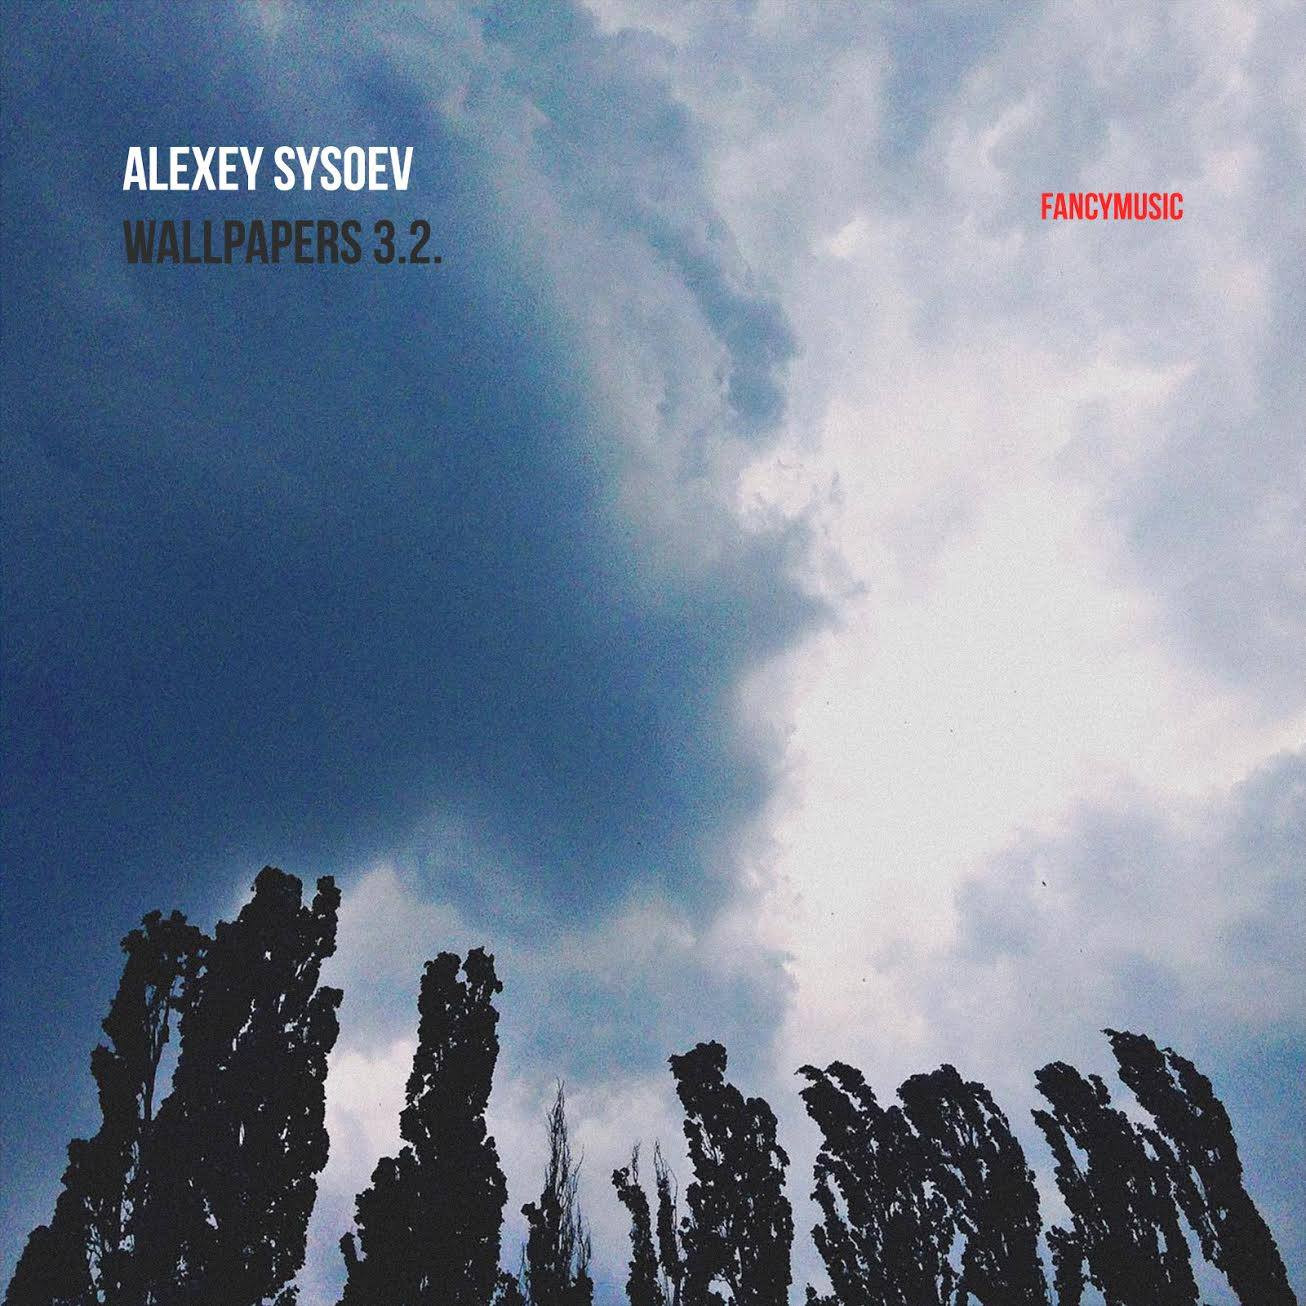 Обложка альбома Алексея Сысоева “Wallpapers 3.2”